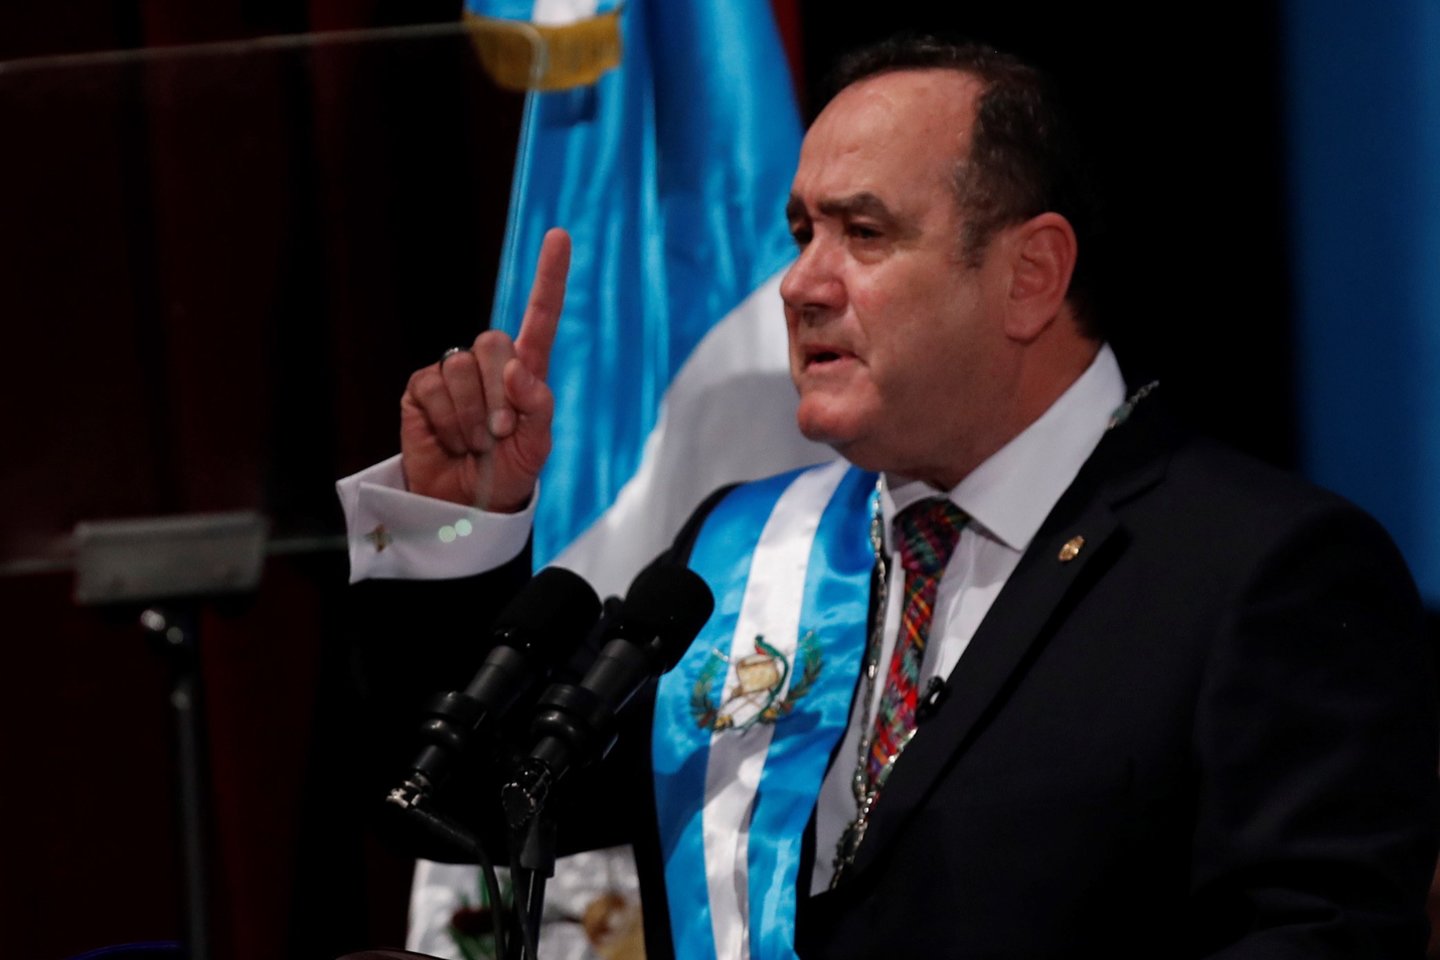  ​Gvatemala turi naują prezidentą. Alejandras Giammattei‘is antradienį inauguruotas ketverių metų kadencijai prezidento ir premjero poste. Jis pakeitė Jimmy‘į Moralresą, kuris, remiantis konstitucija, siekti perrinkimo negalėjo.<br>EPA/ELTA nuotr.